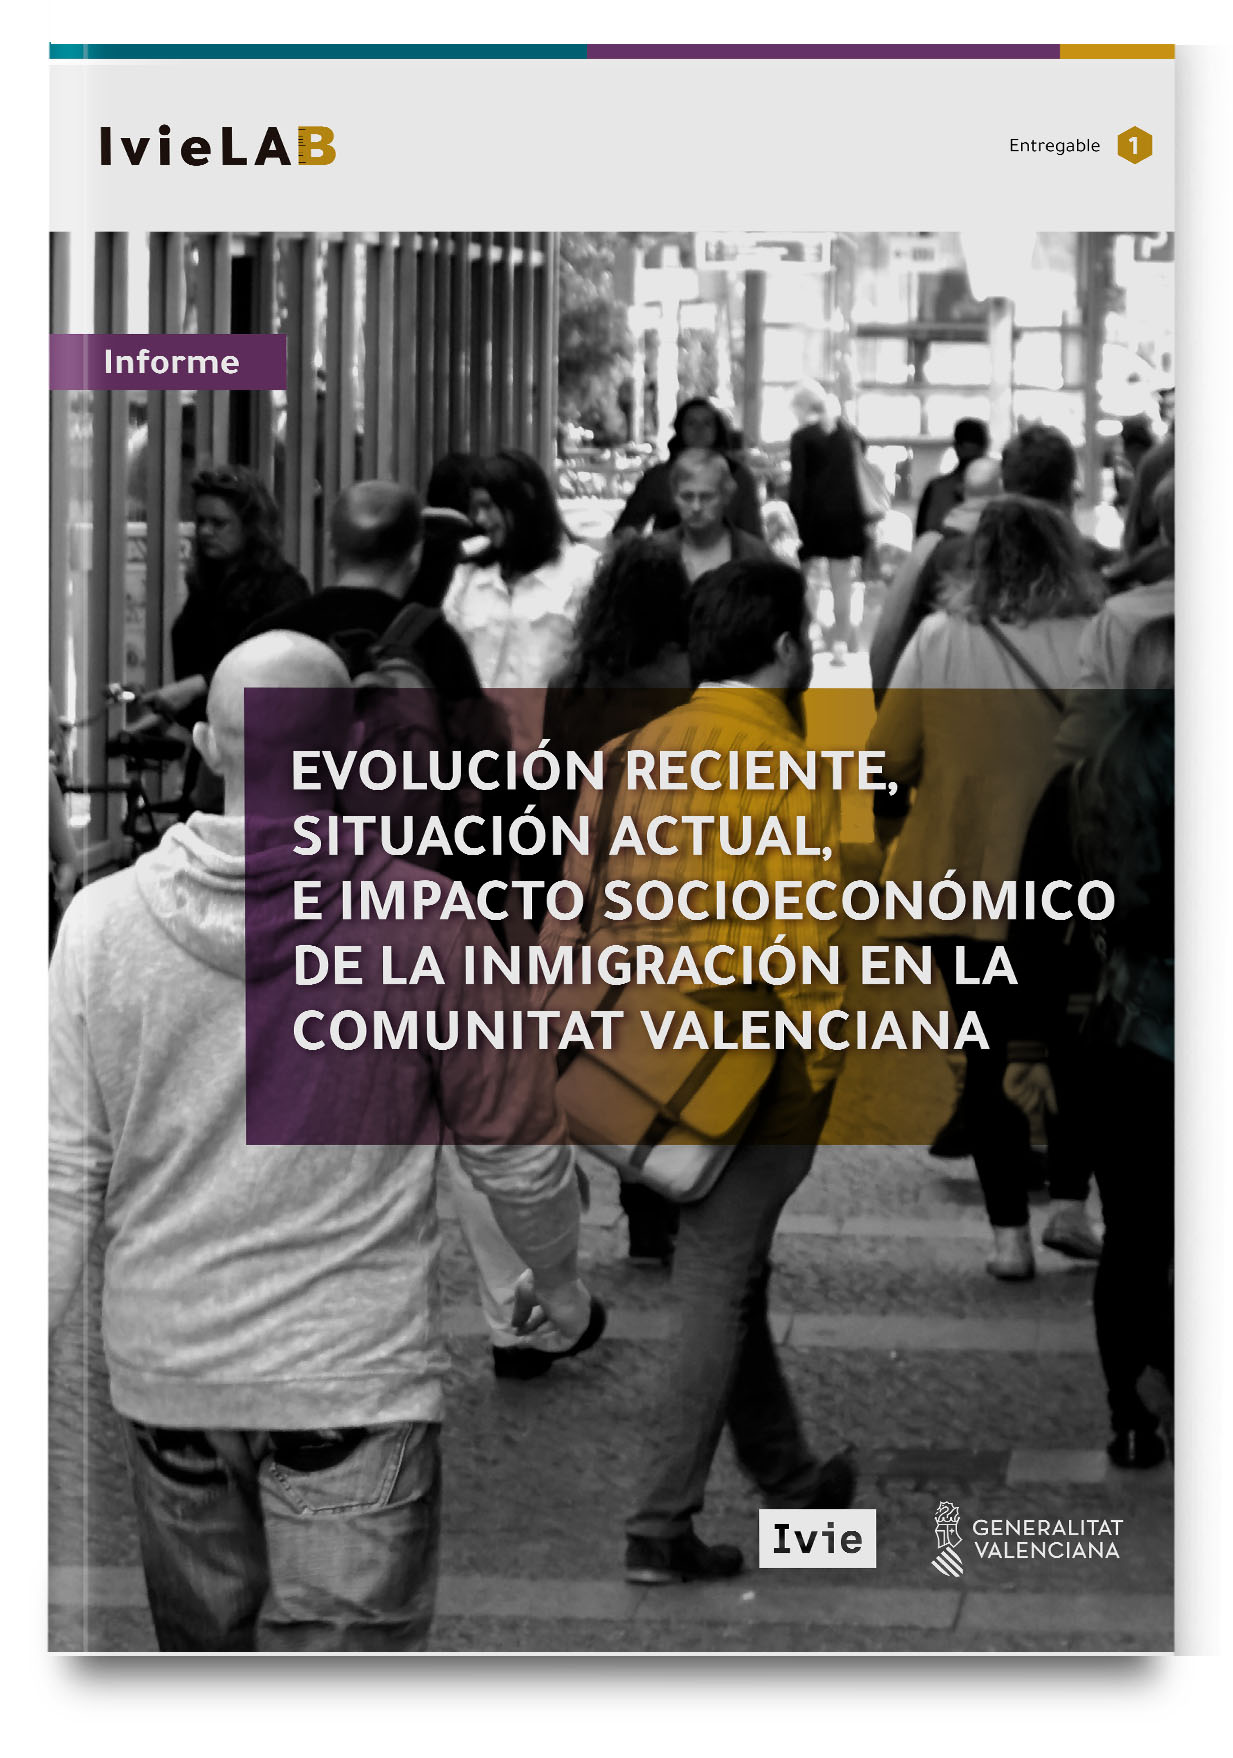 IvieLAB. Evolución reciente, situación actual e impacto socioeconómico de la inmigración en la Comunitat Valenciana